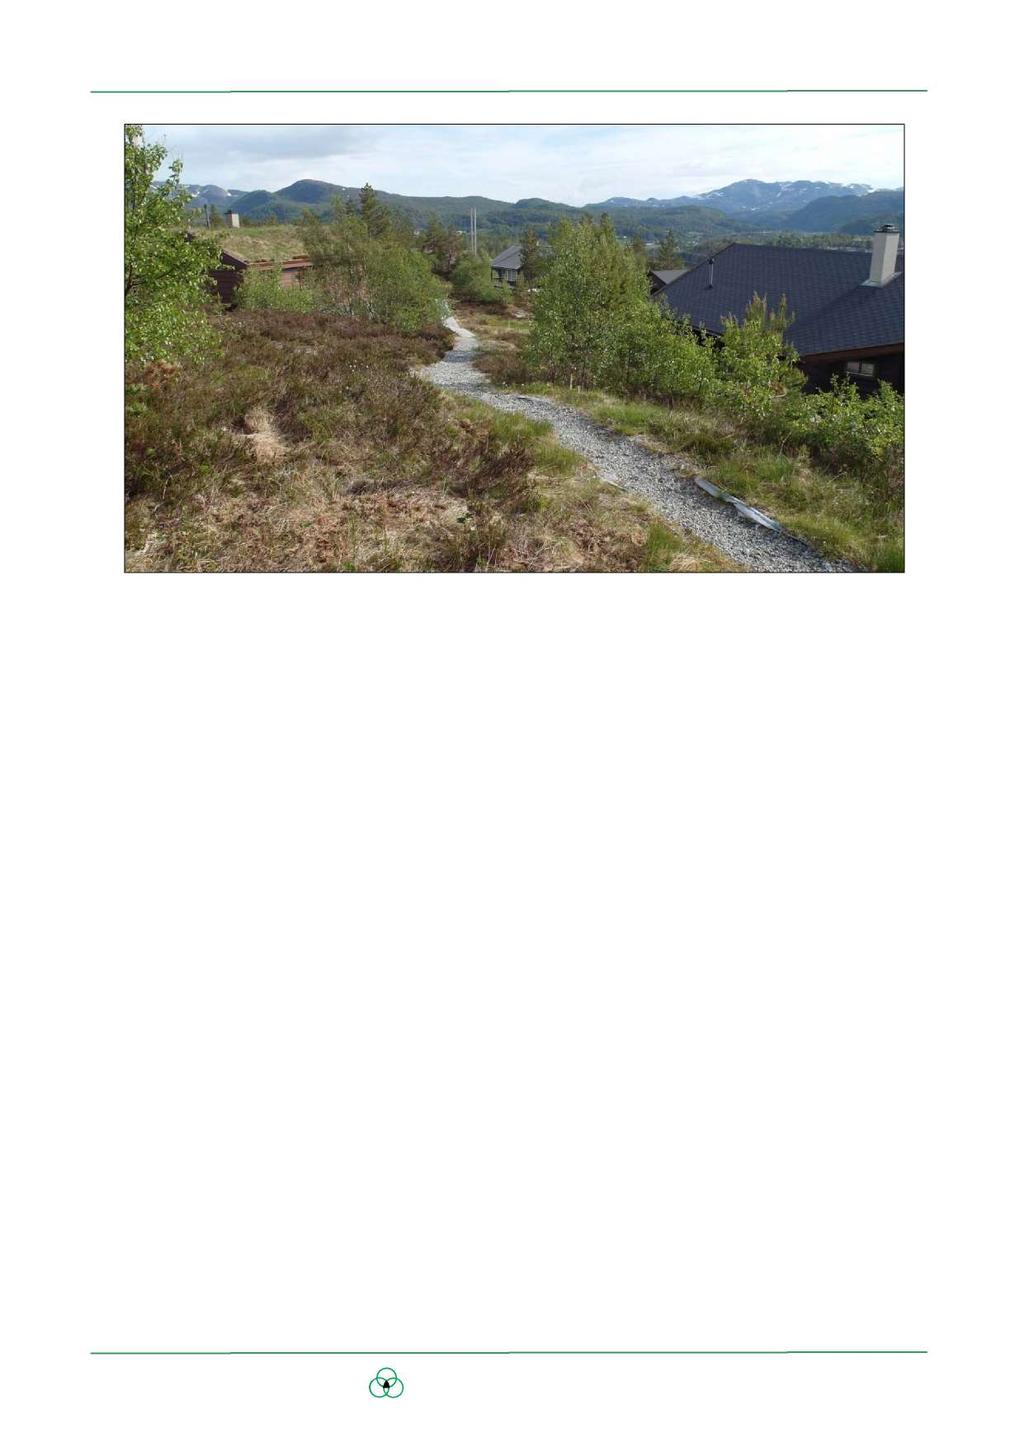 Bilde 2. God terrengtilpasning og pent anlagte stier er et positivt trekk ved dagens hyttefelt på Furåsen. 1.